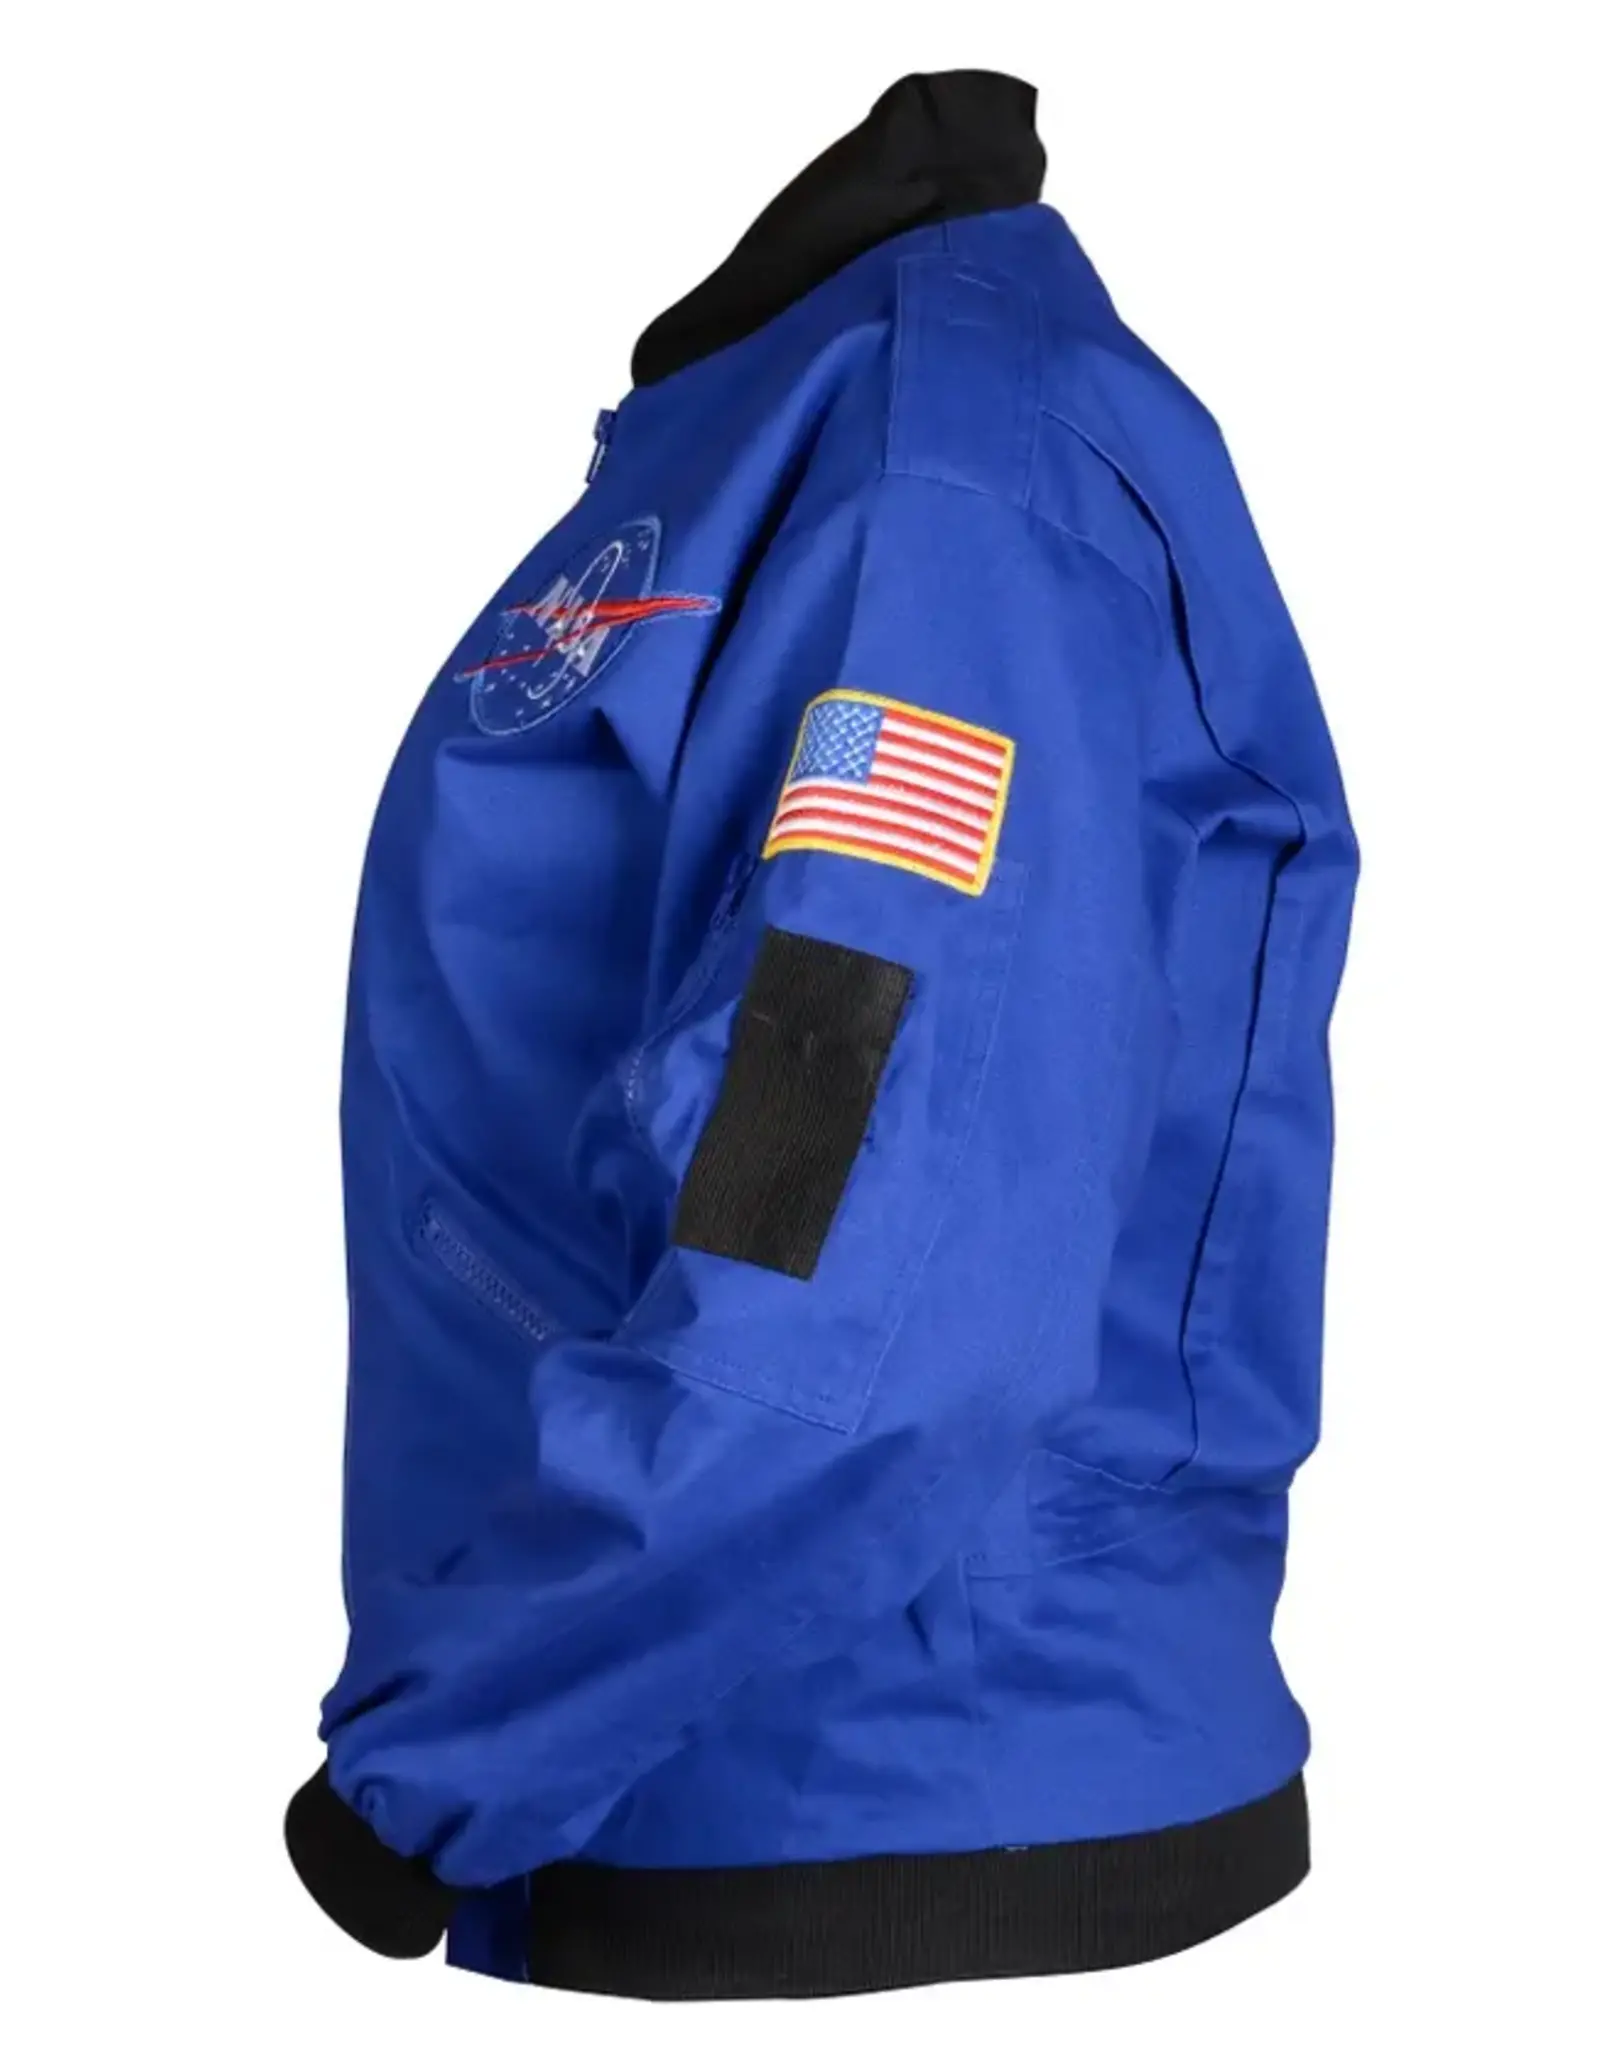 NASA NASA Adult Flight Jacket (SPECIFY SIZE)